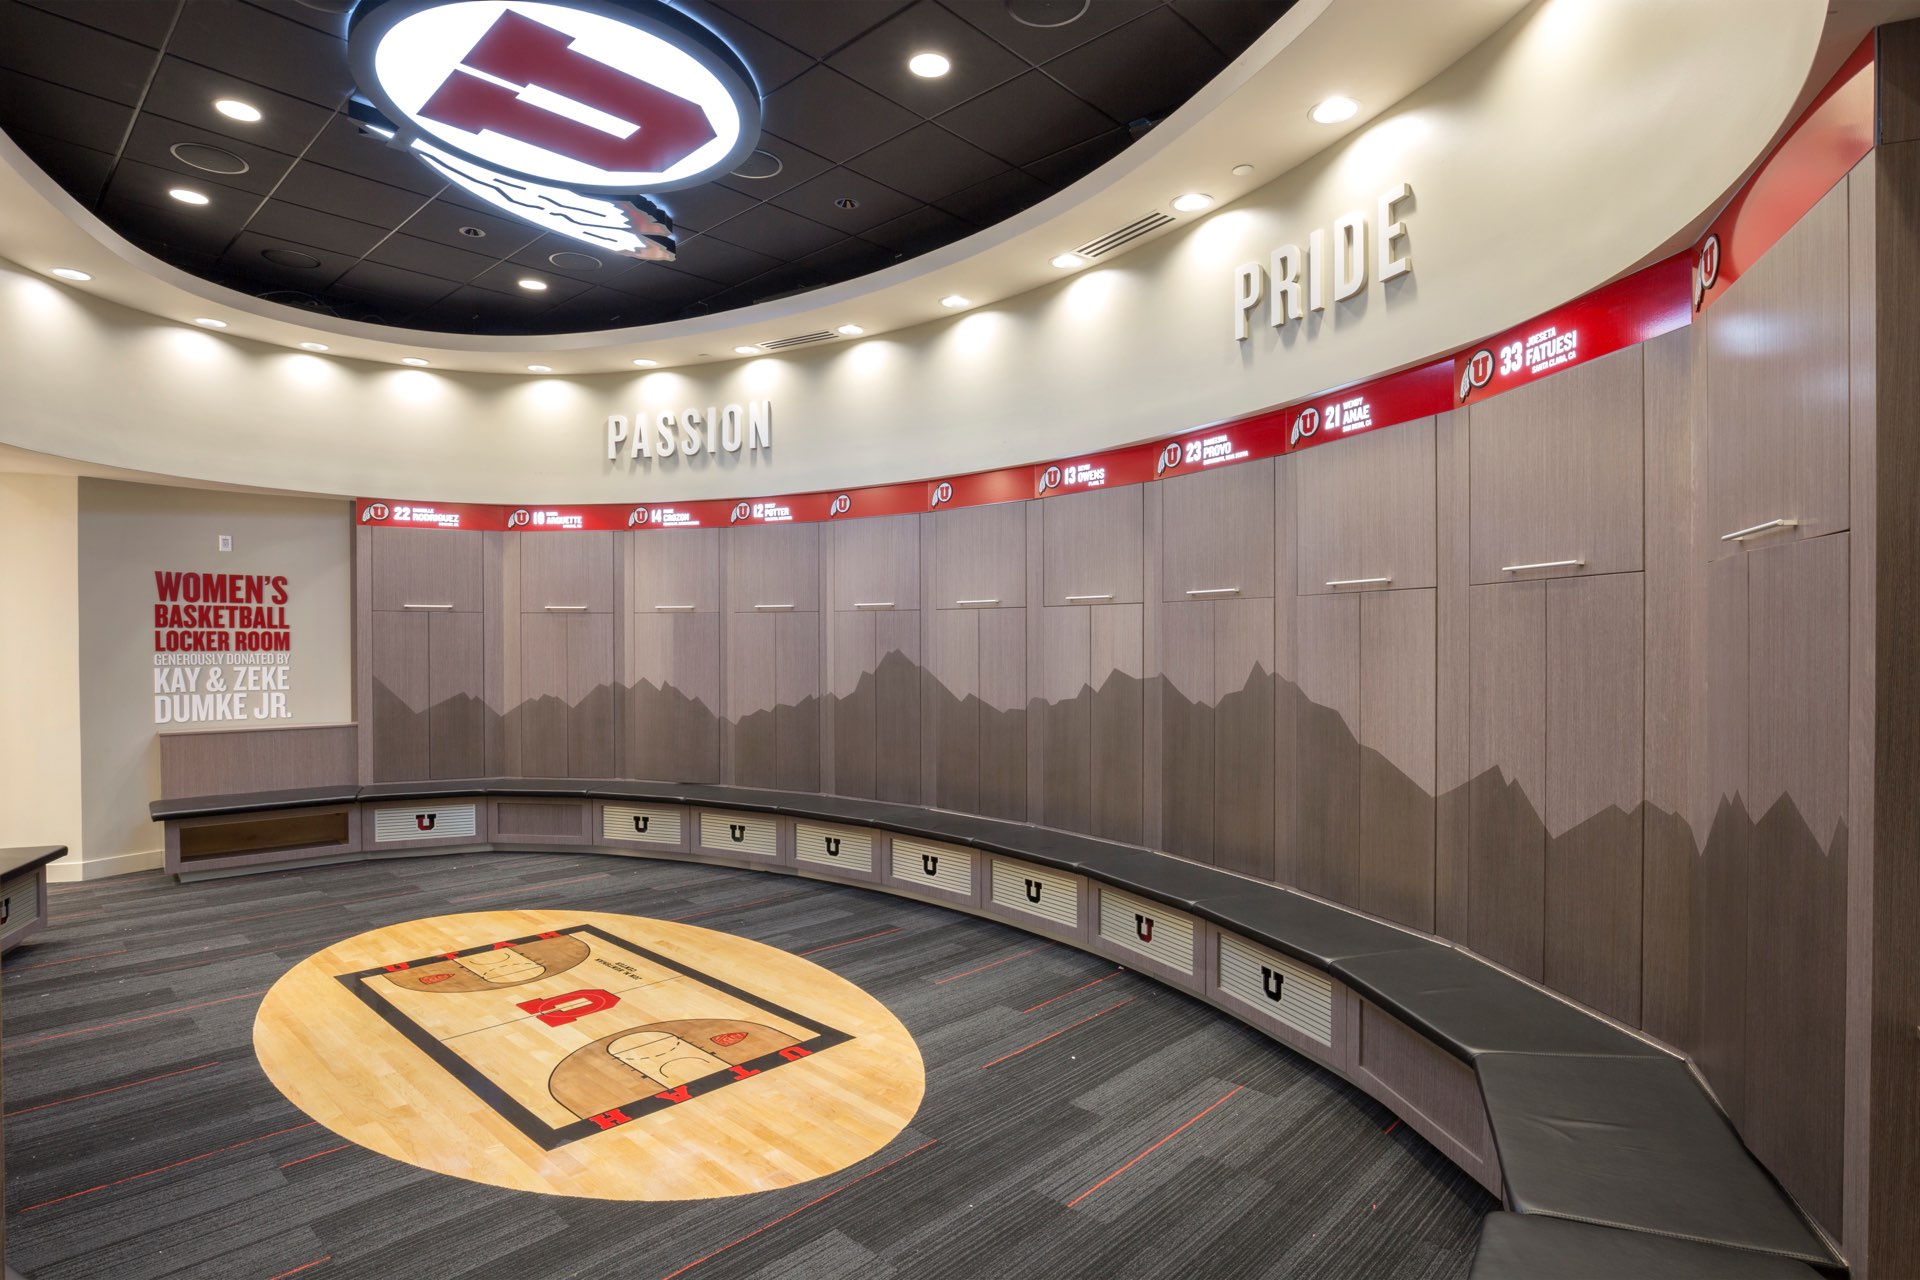 Locker room inside the University of Utah Basketball Interior, interior design by Elliott Workgroup